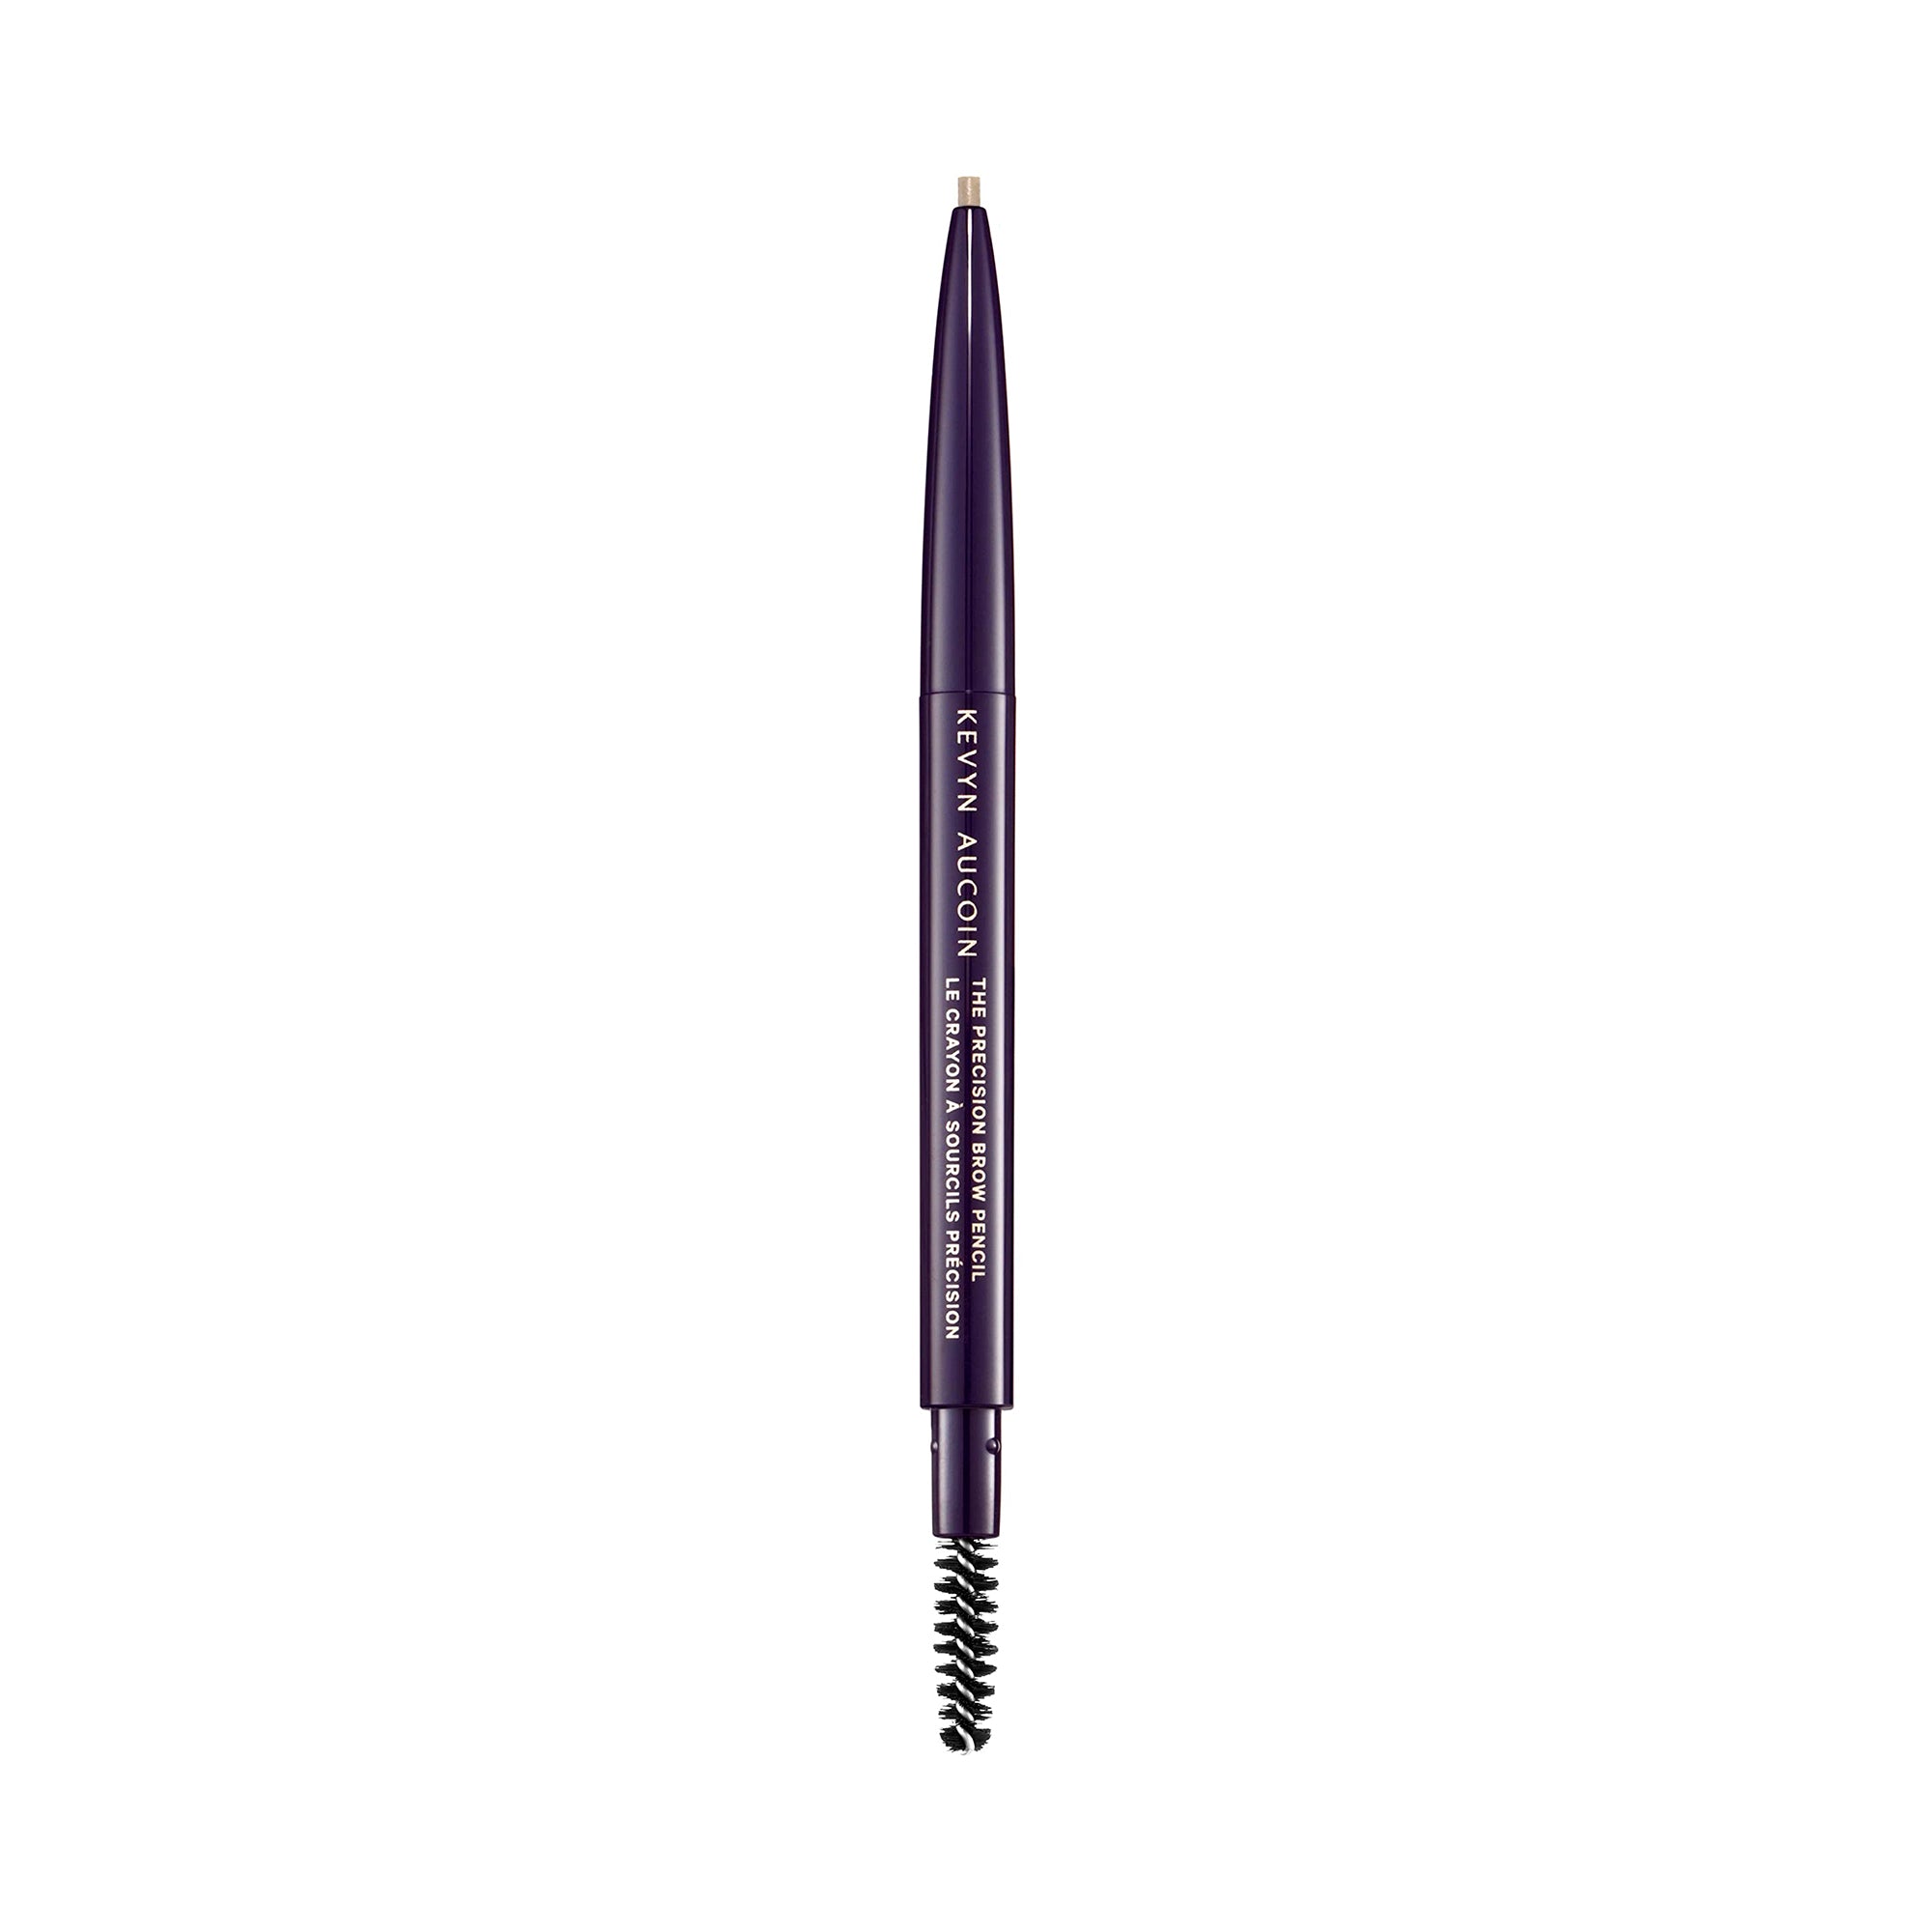 Kevyn Aucoin The Precision Brow Pencil / ASH BLONDE